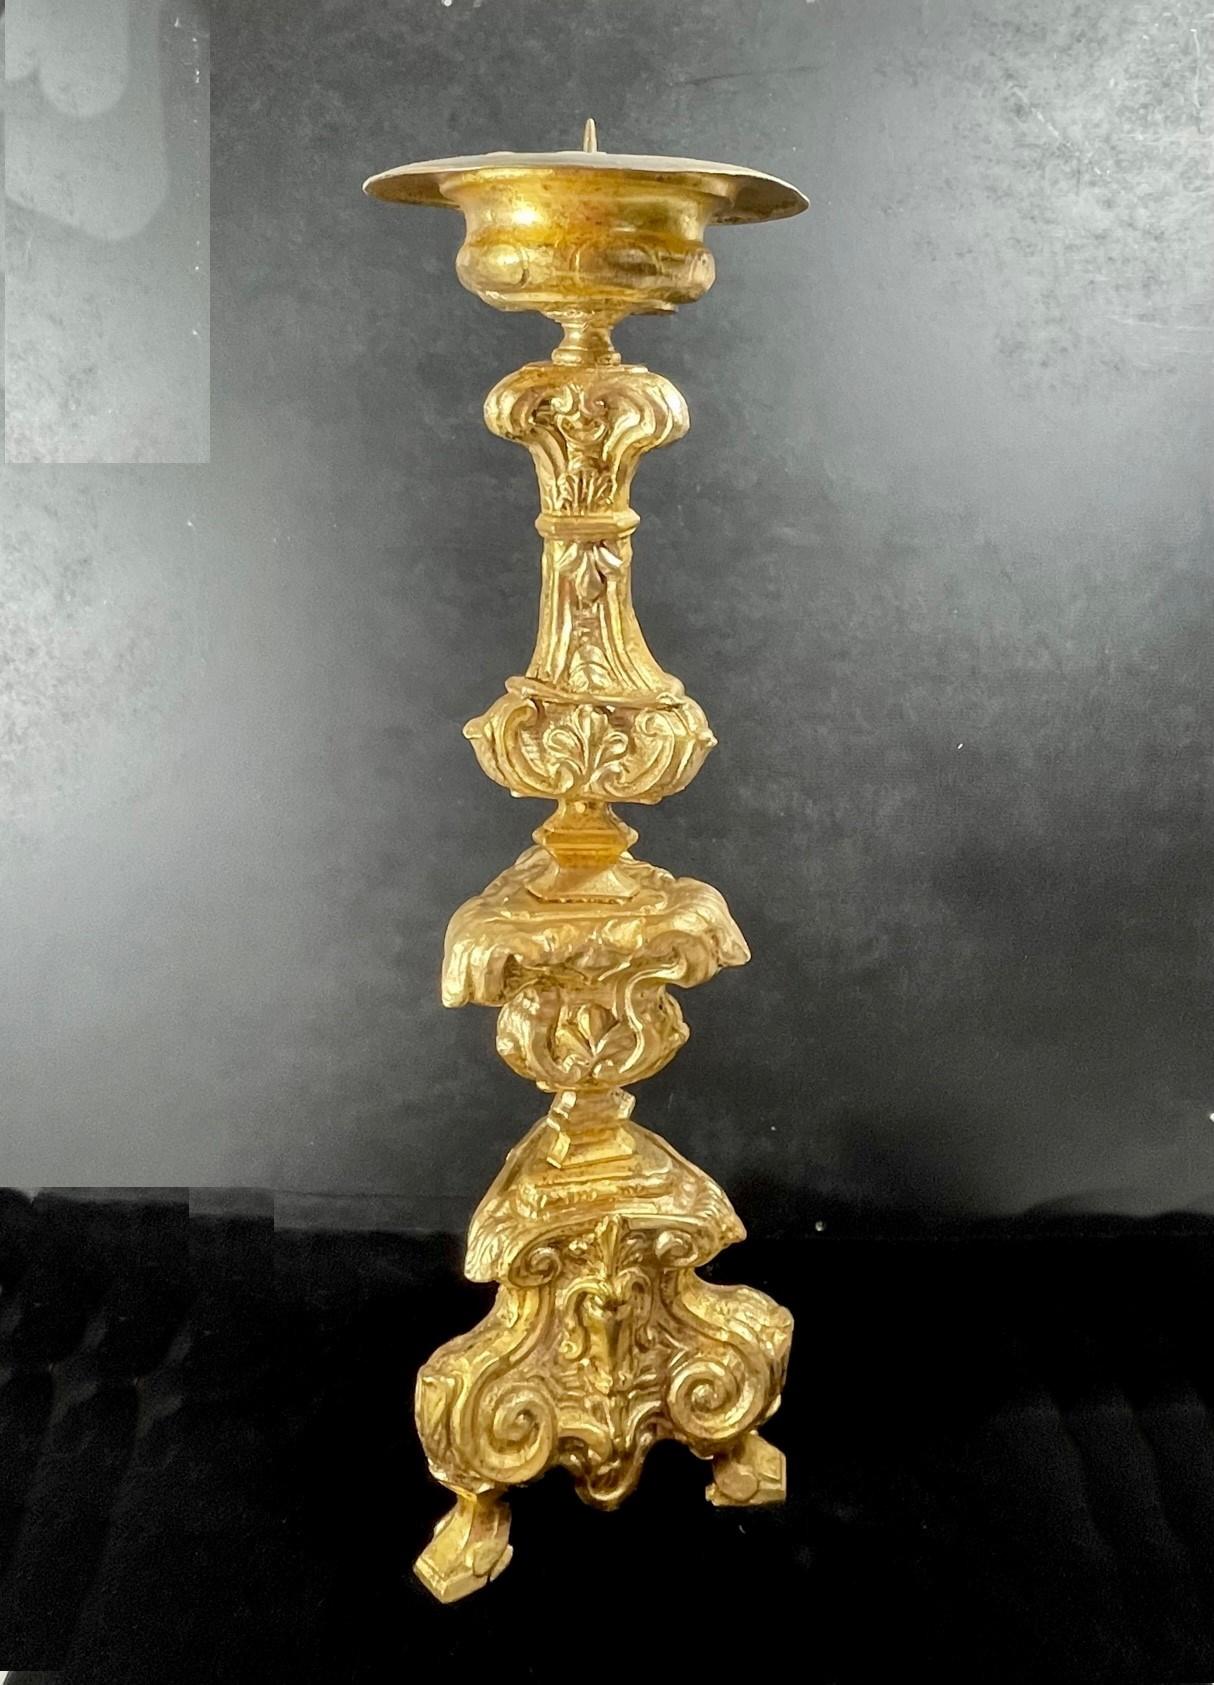 Chandelier italien baroque du 18e siècle en cuivre doré.

Rare chandelier baroque italien du troisième quart du XVIIIe siècle. Il s'agit d'un corps en cuivre doré avec un sommet bombé sur une tige balustre avec des volutes et des rocailles sur une